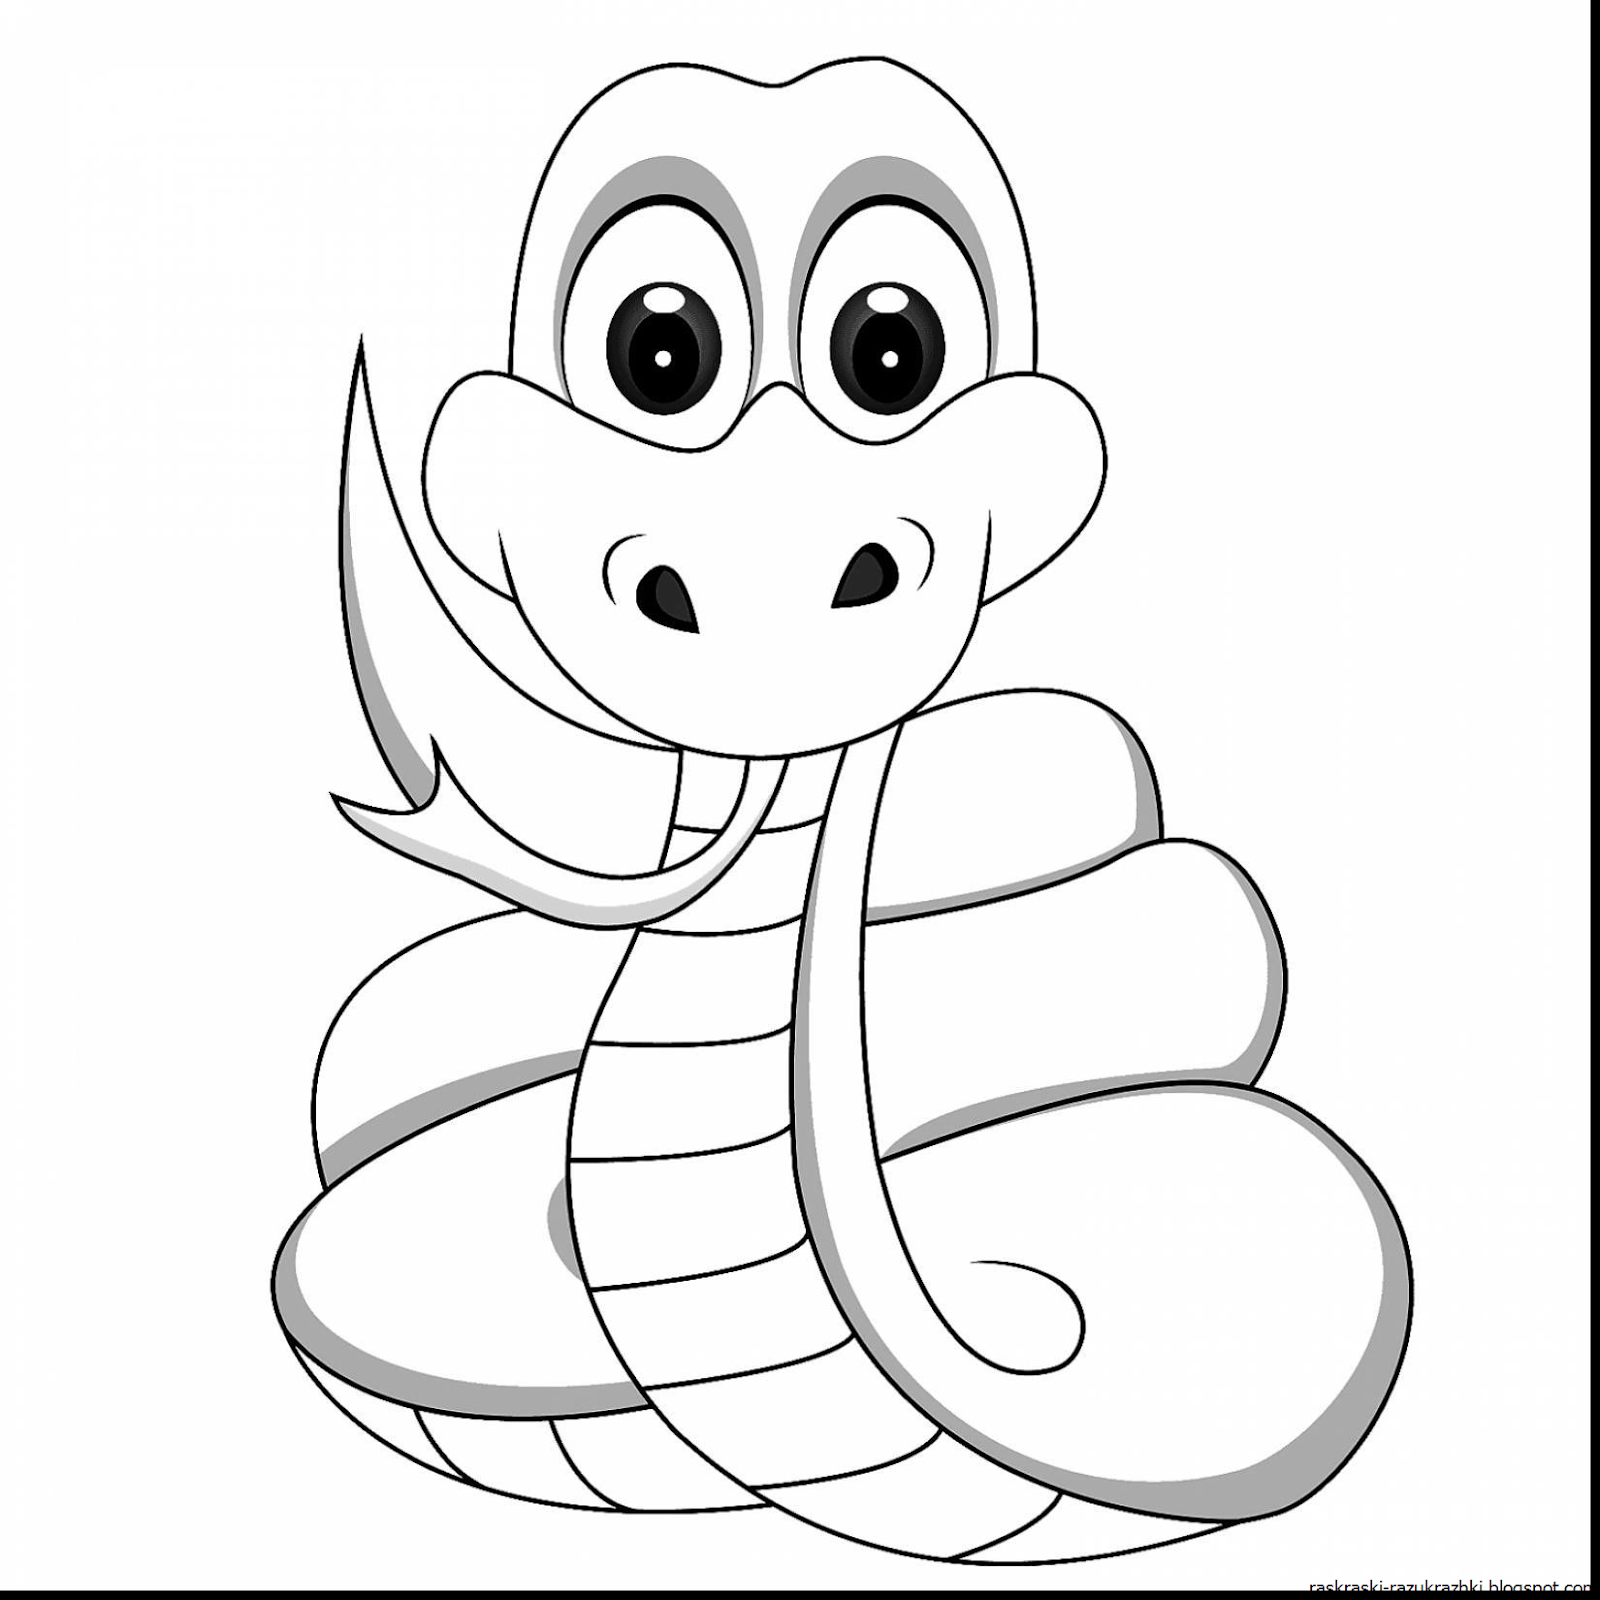 Раскраски змей распечатать. Змея раскраска. Змея раскраска для детей. Раскраска змеи для детей. Раскраска о змеях.